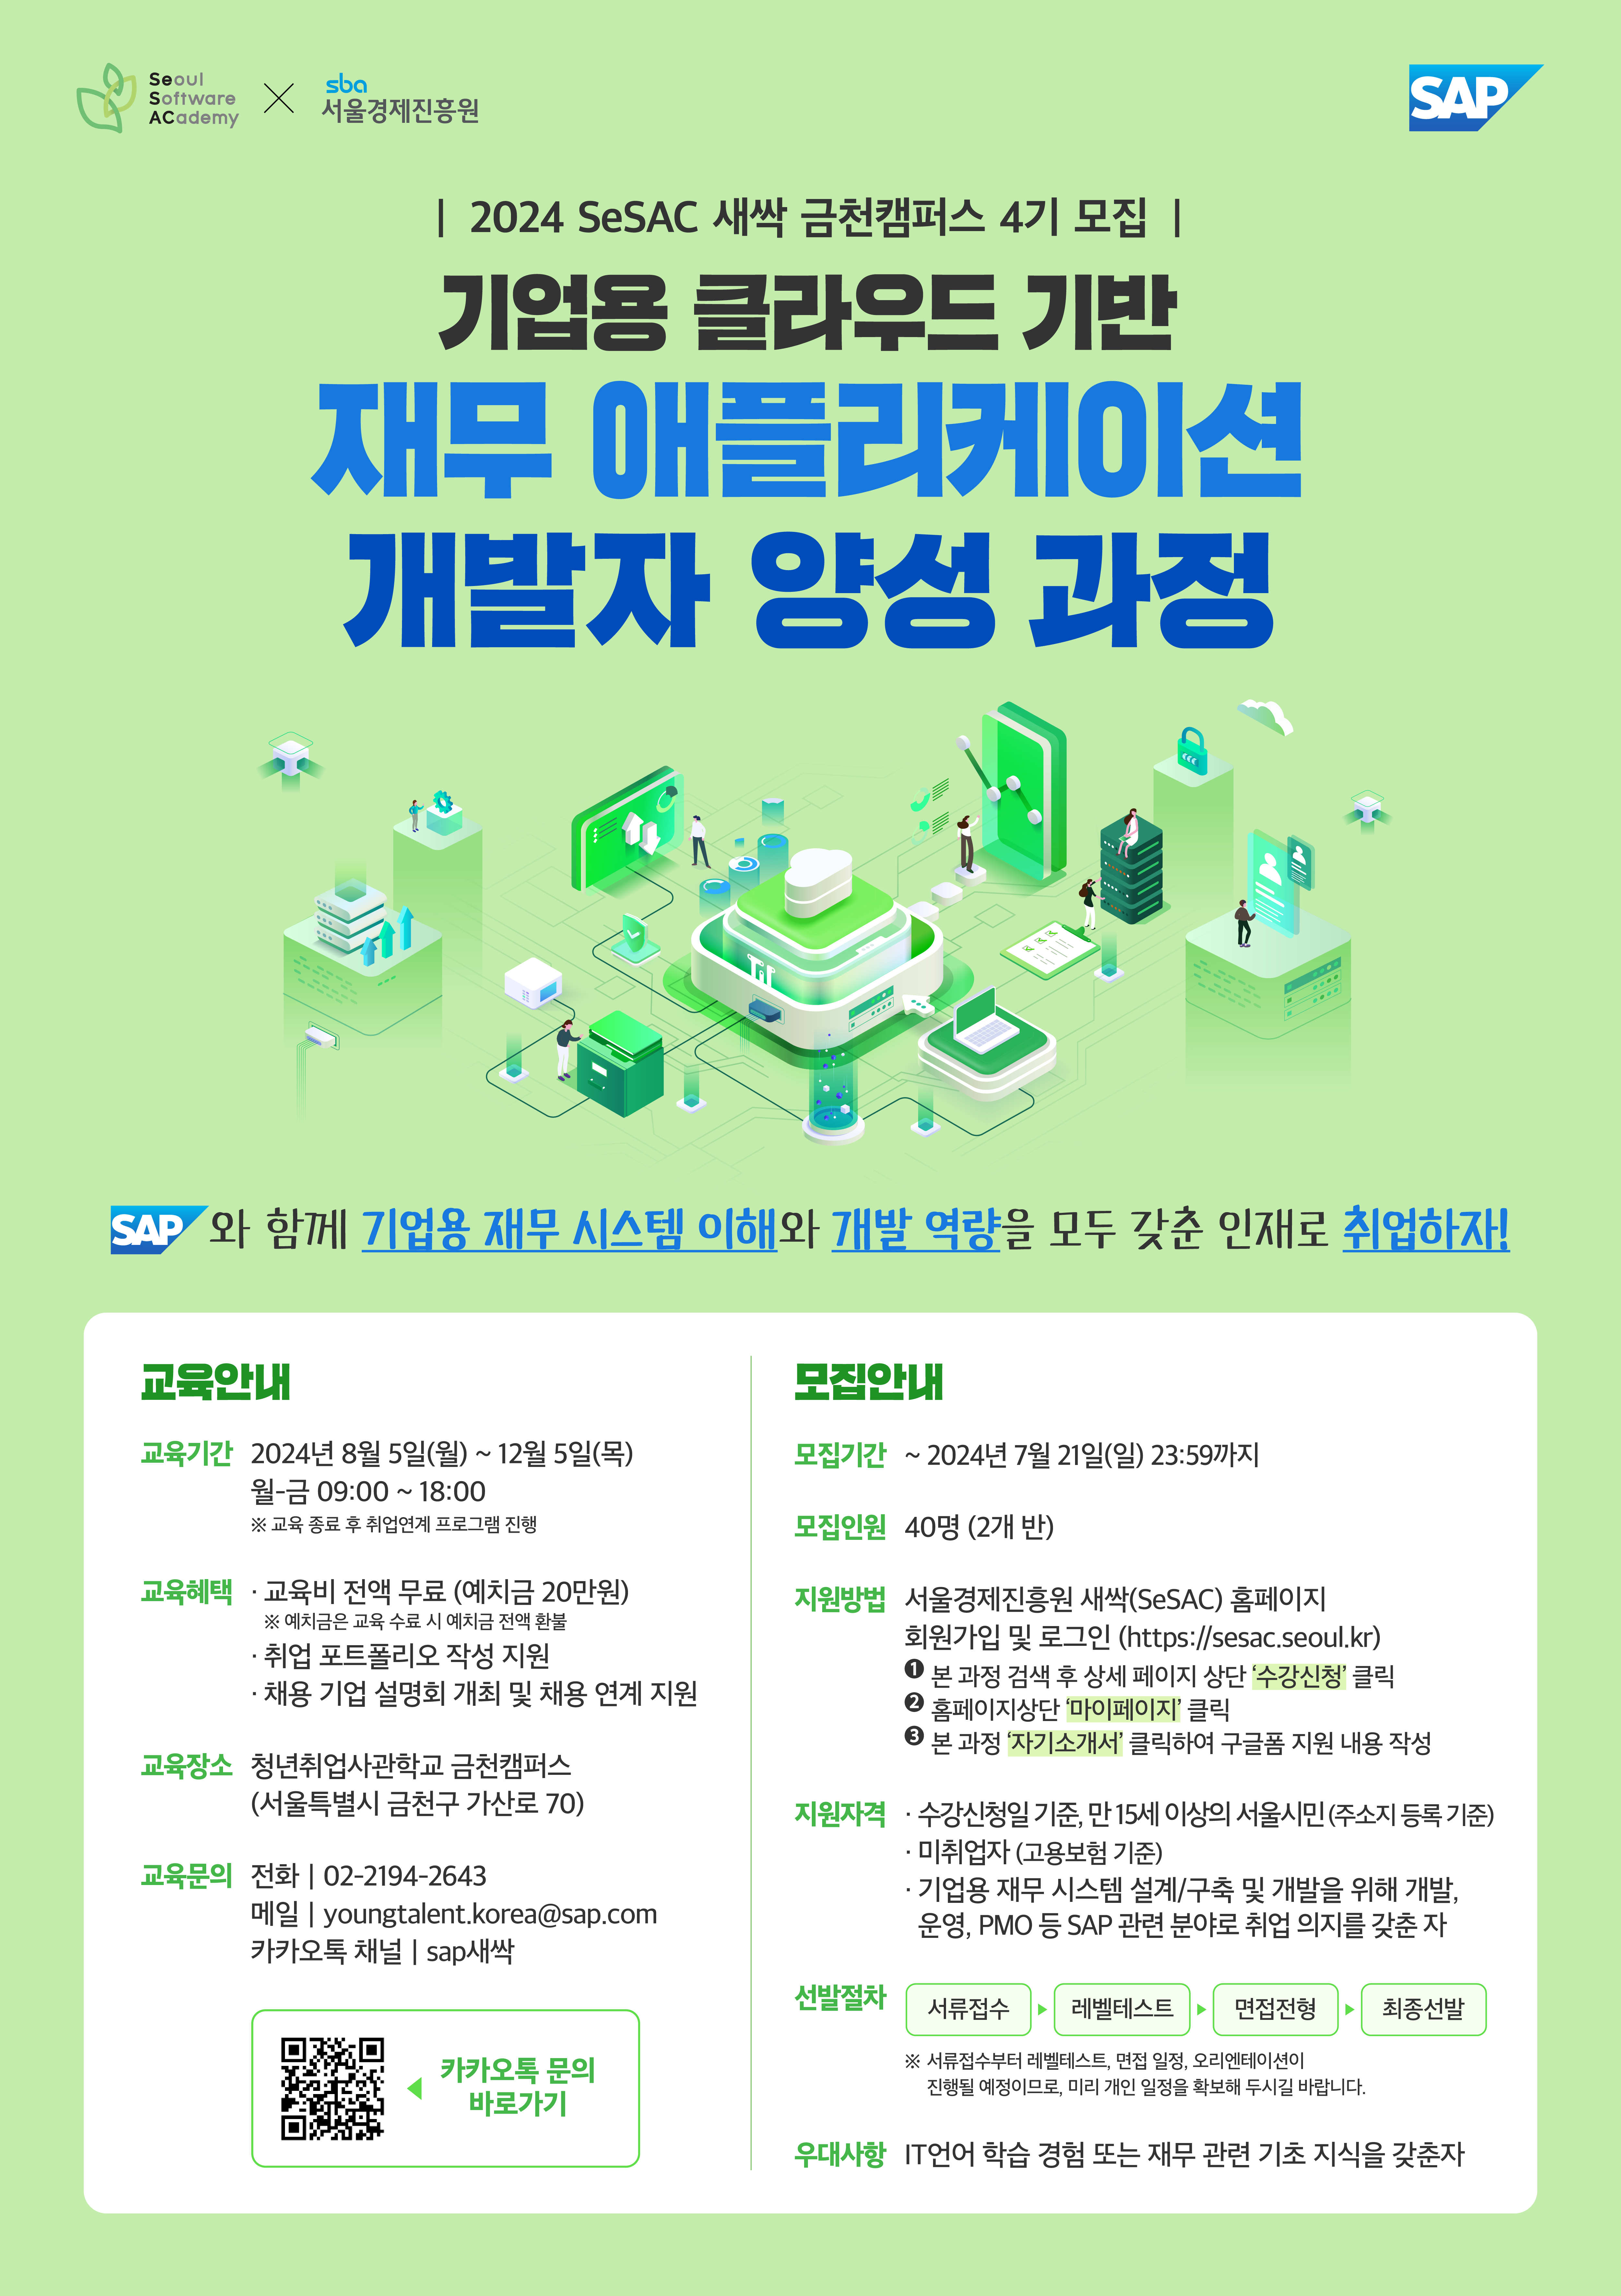 [5차] SAP Korea_SeSac(새싹) 4기 모집_포스터(1200x1700px)_B.jpg